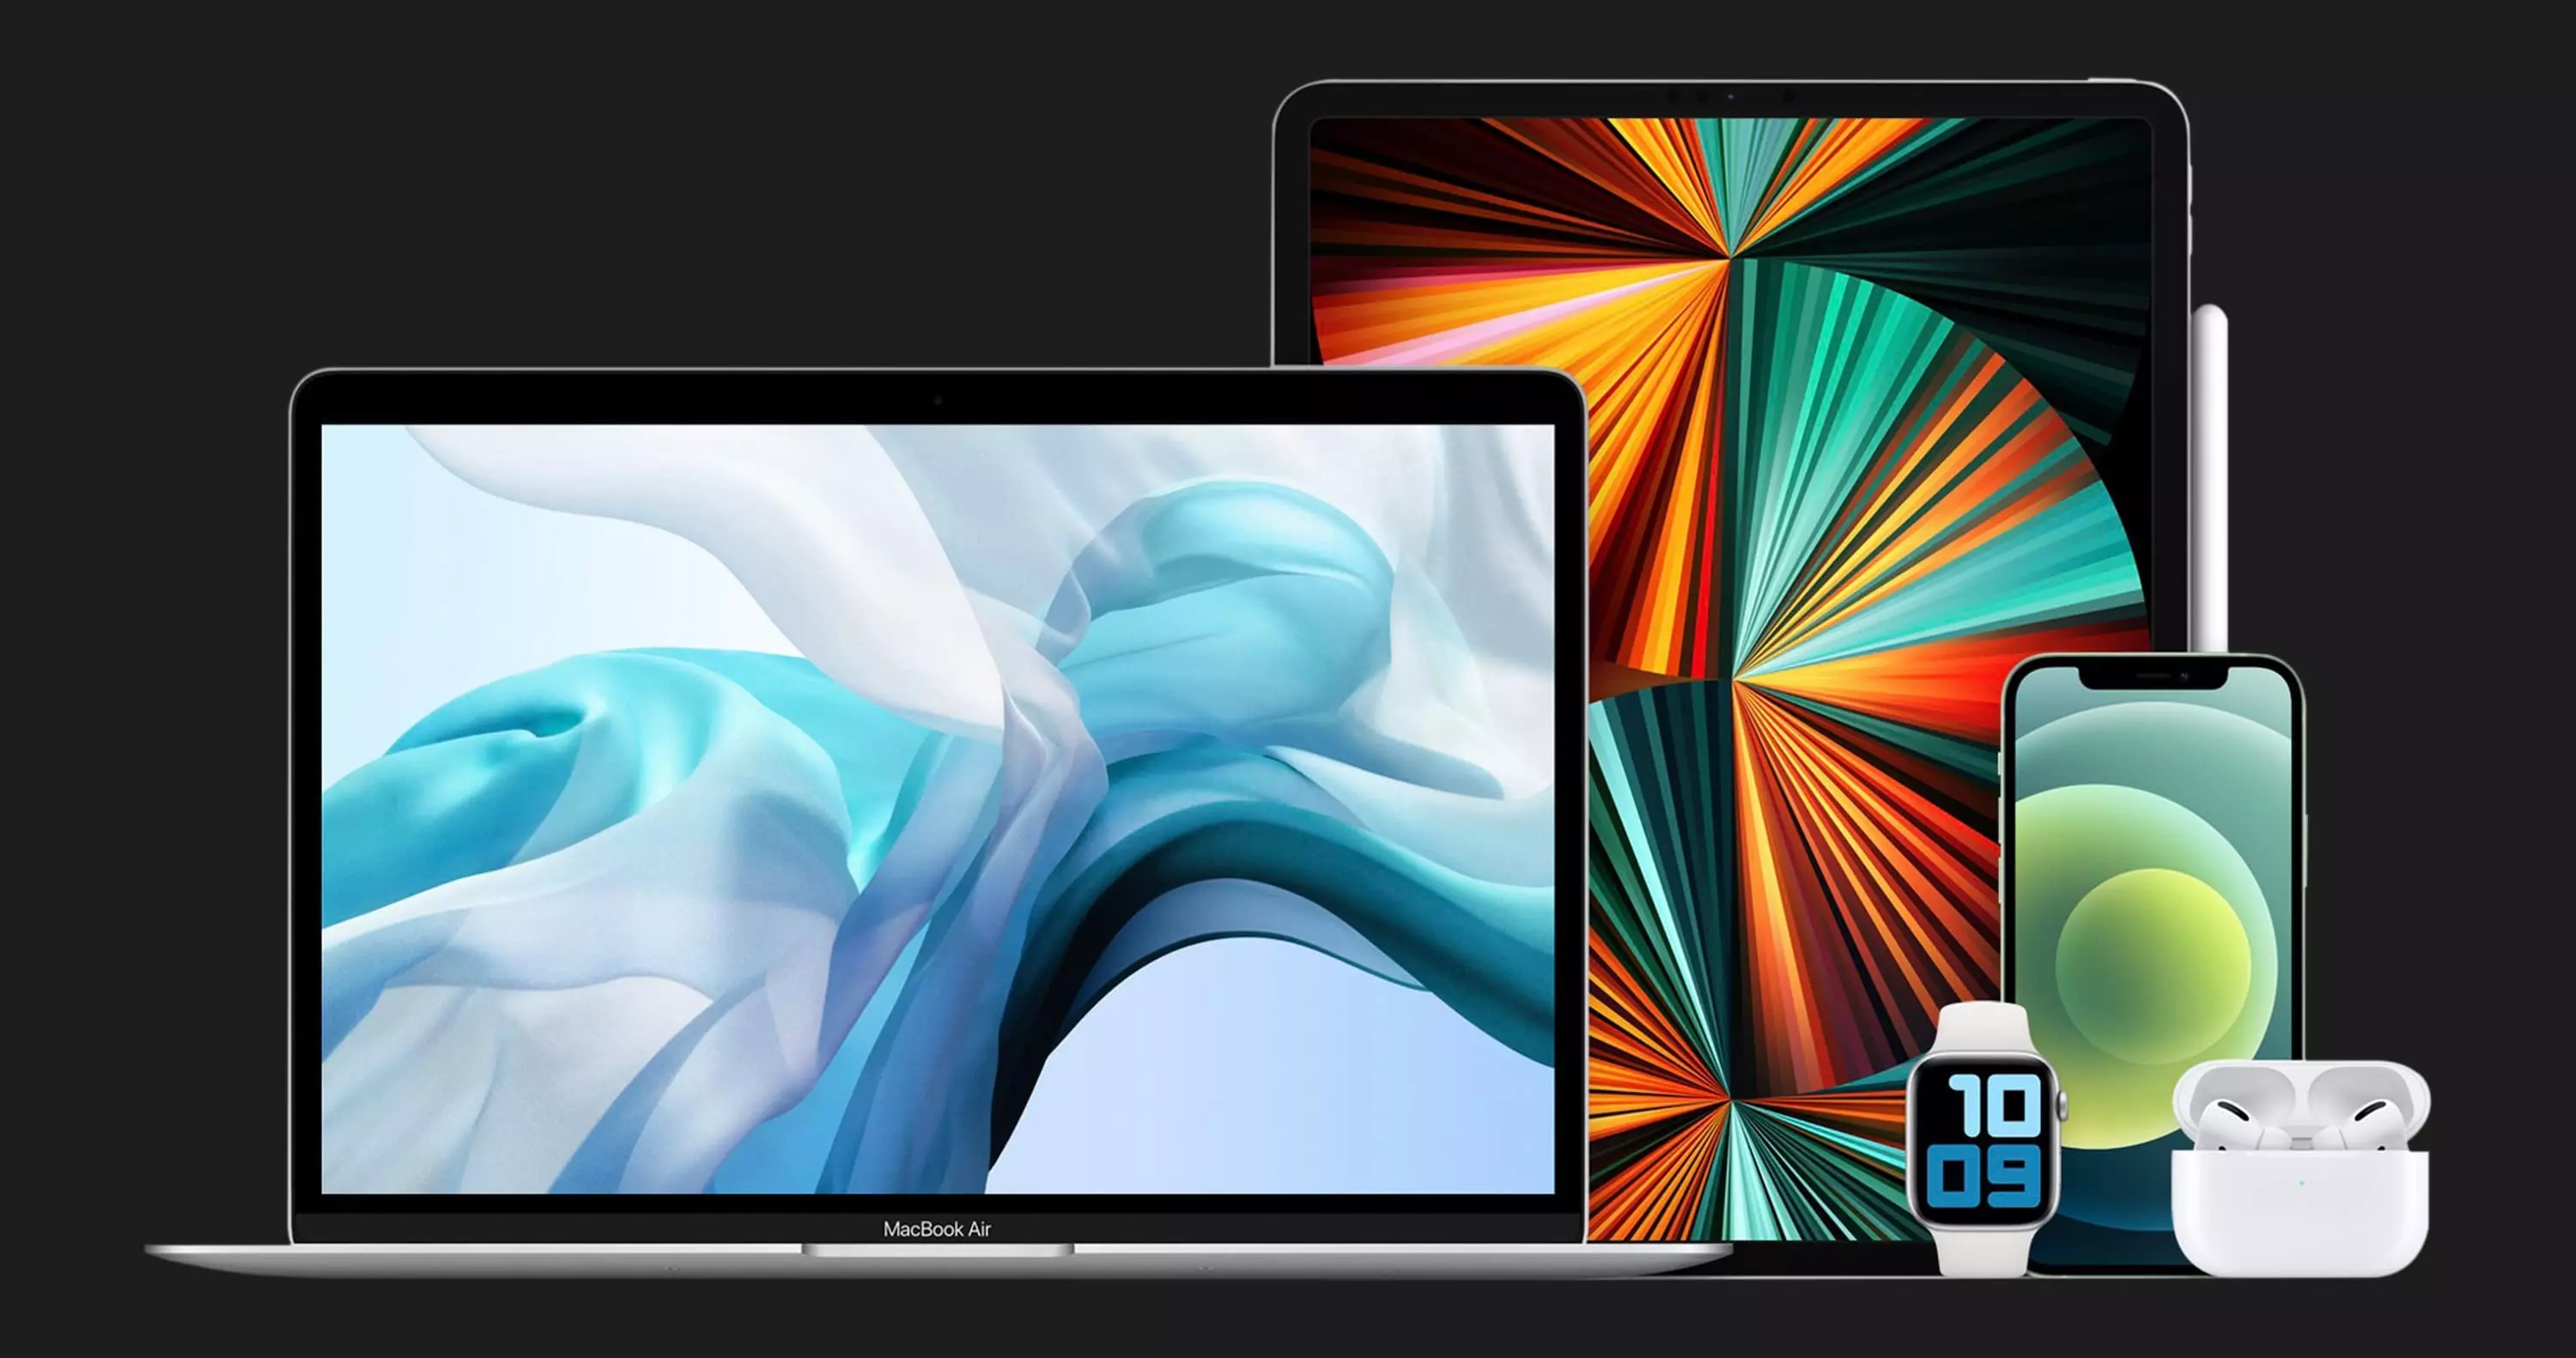 б/у Apple MacBook Air 13, 2019, Silver (256GB) (MVFL2) (Идеальное состояние)